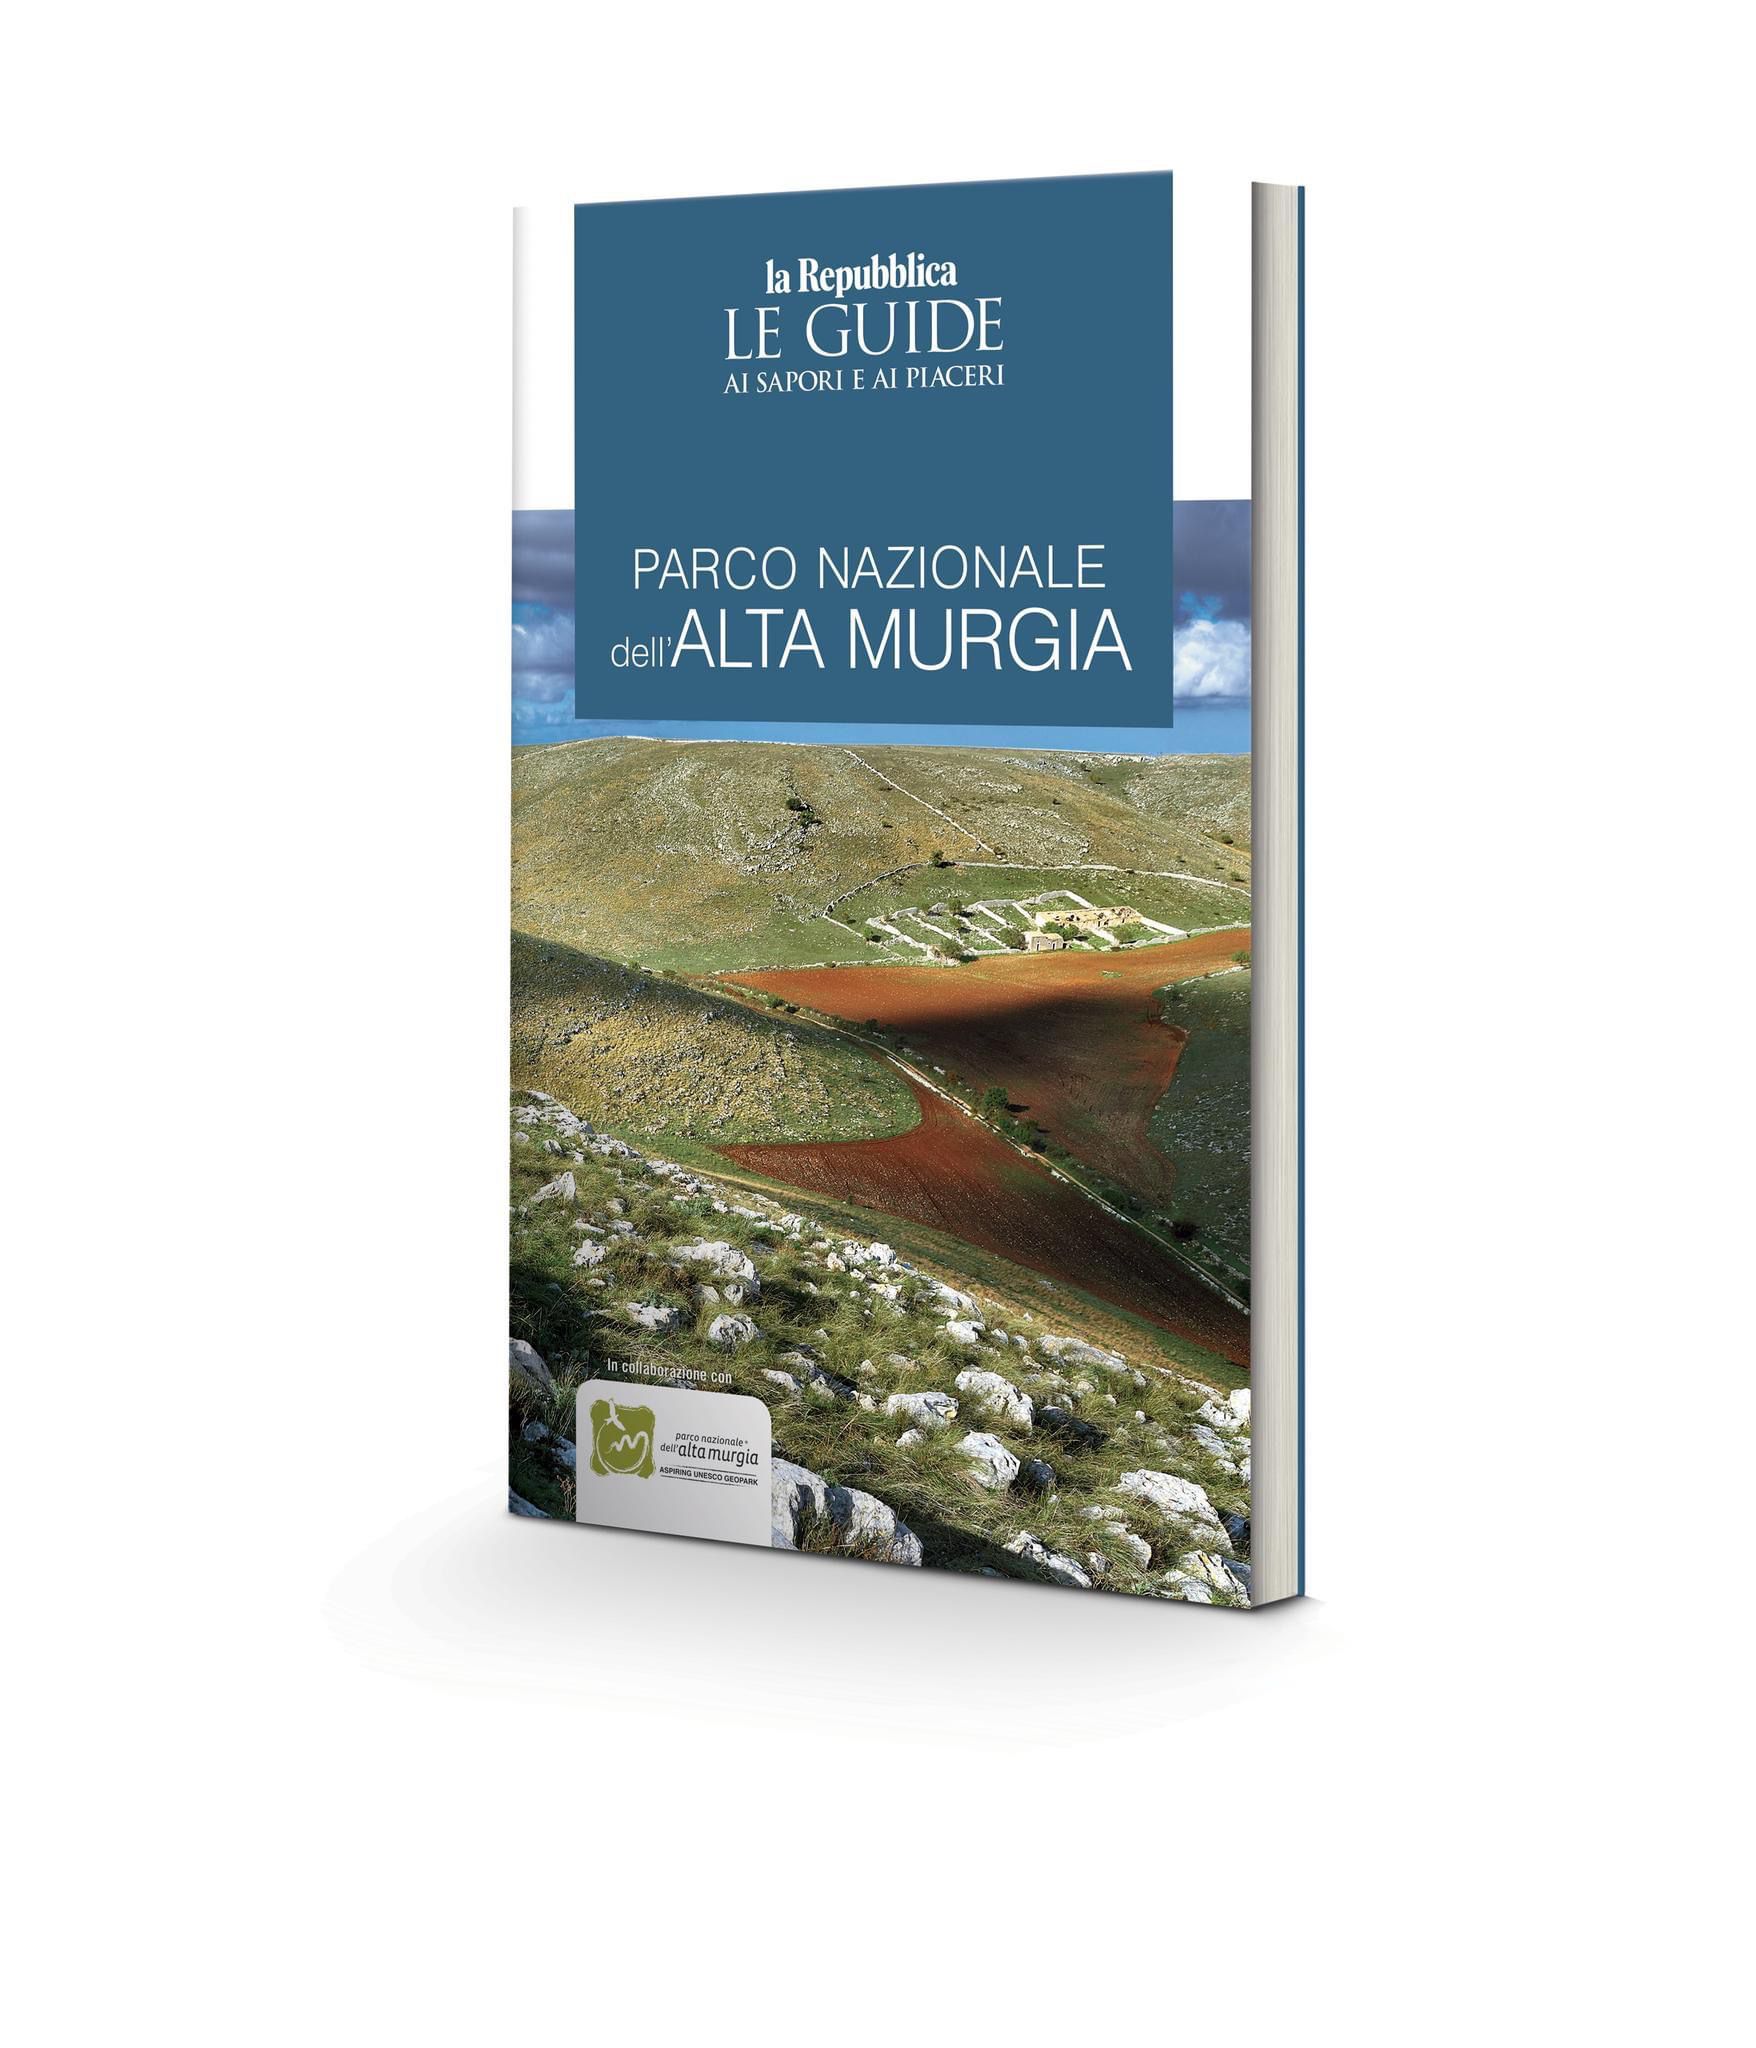 Galleria Parco Nazionale dell’Alta Murgia: una nuova Guida nella collana di Repubblica - Diapositiva 2 di 4